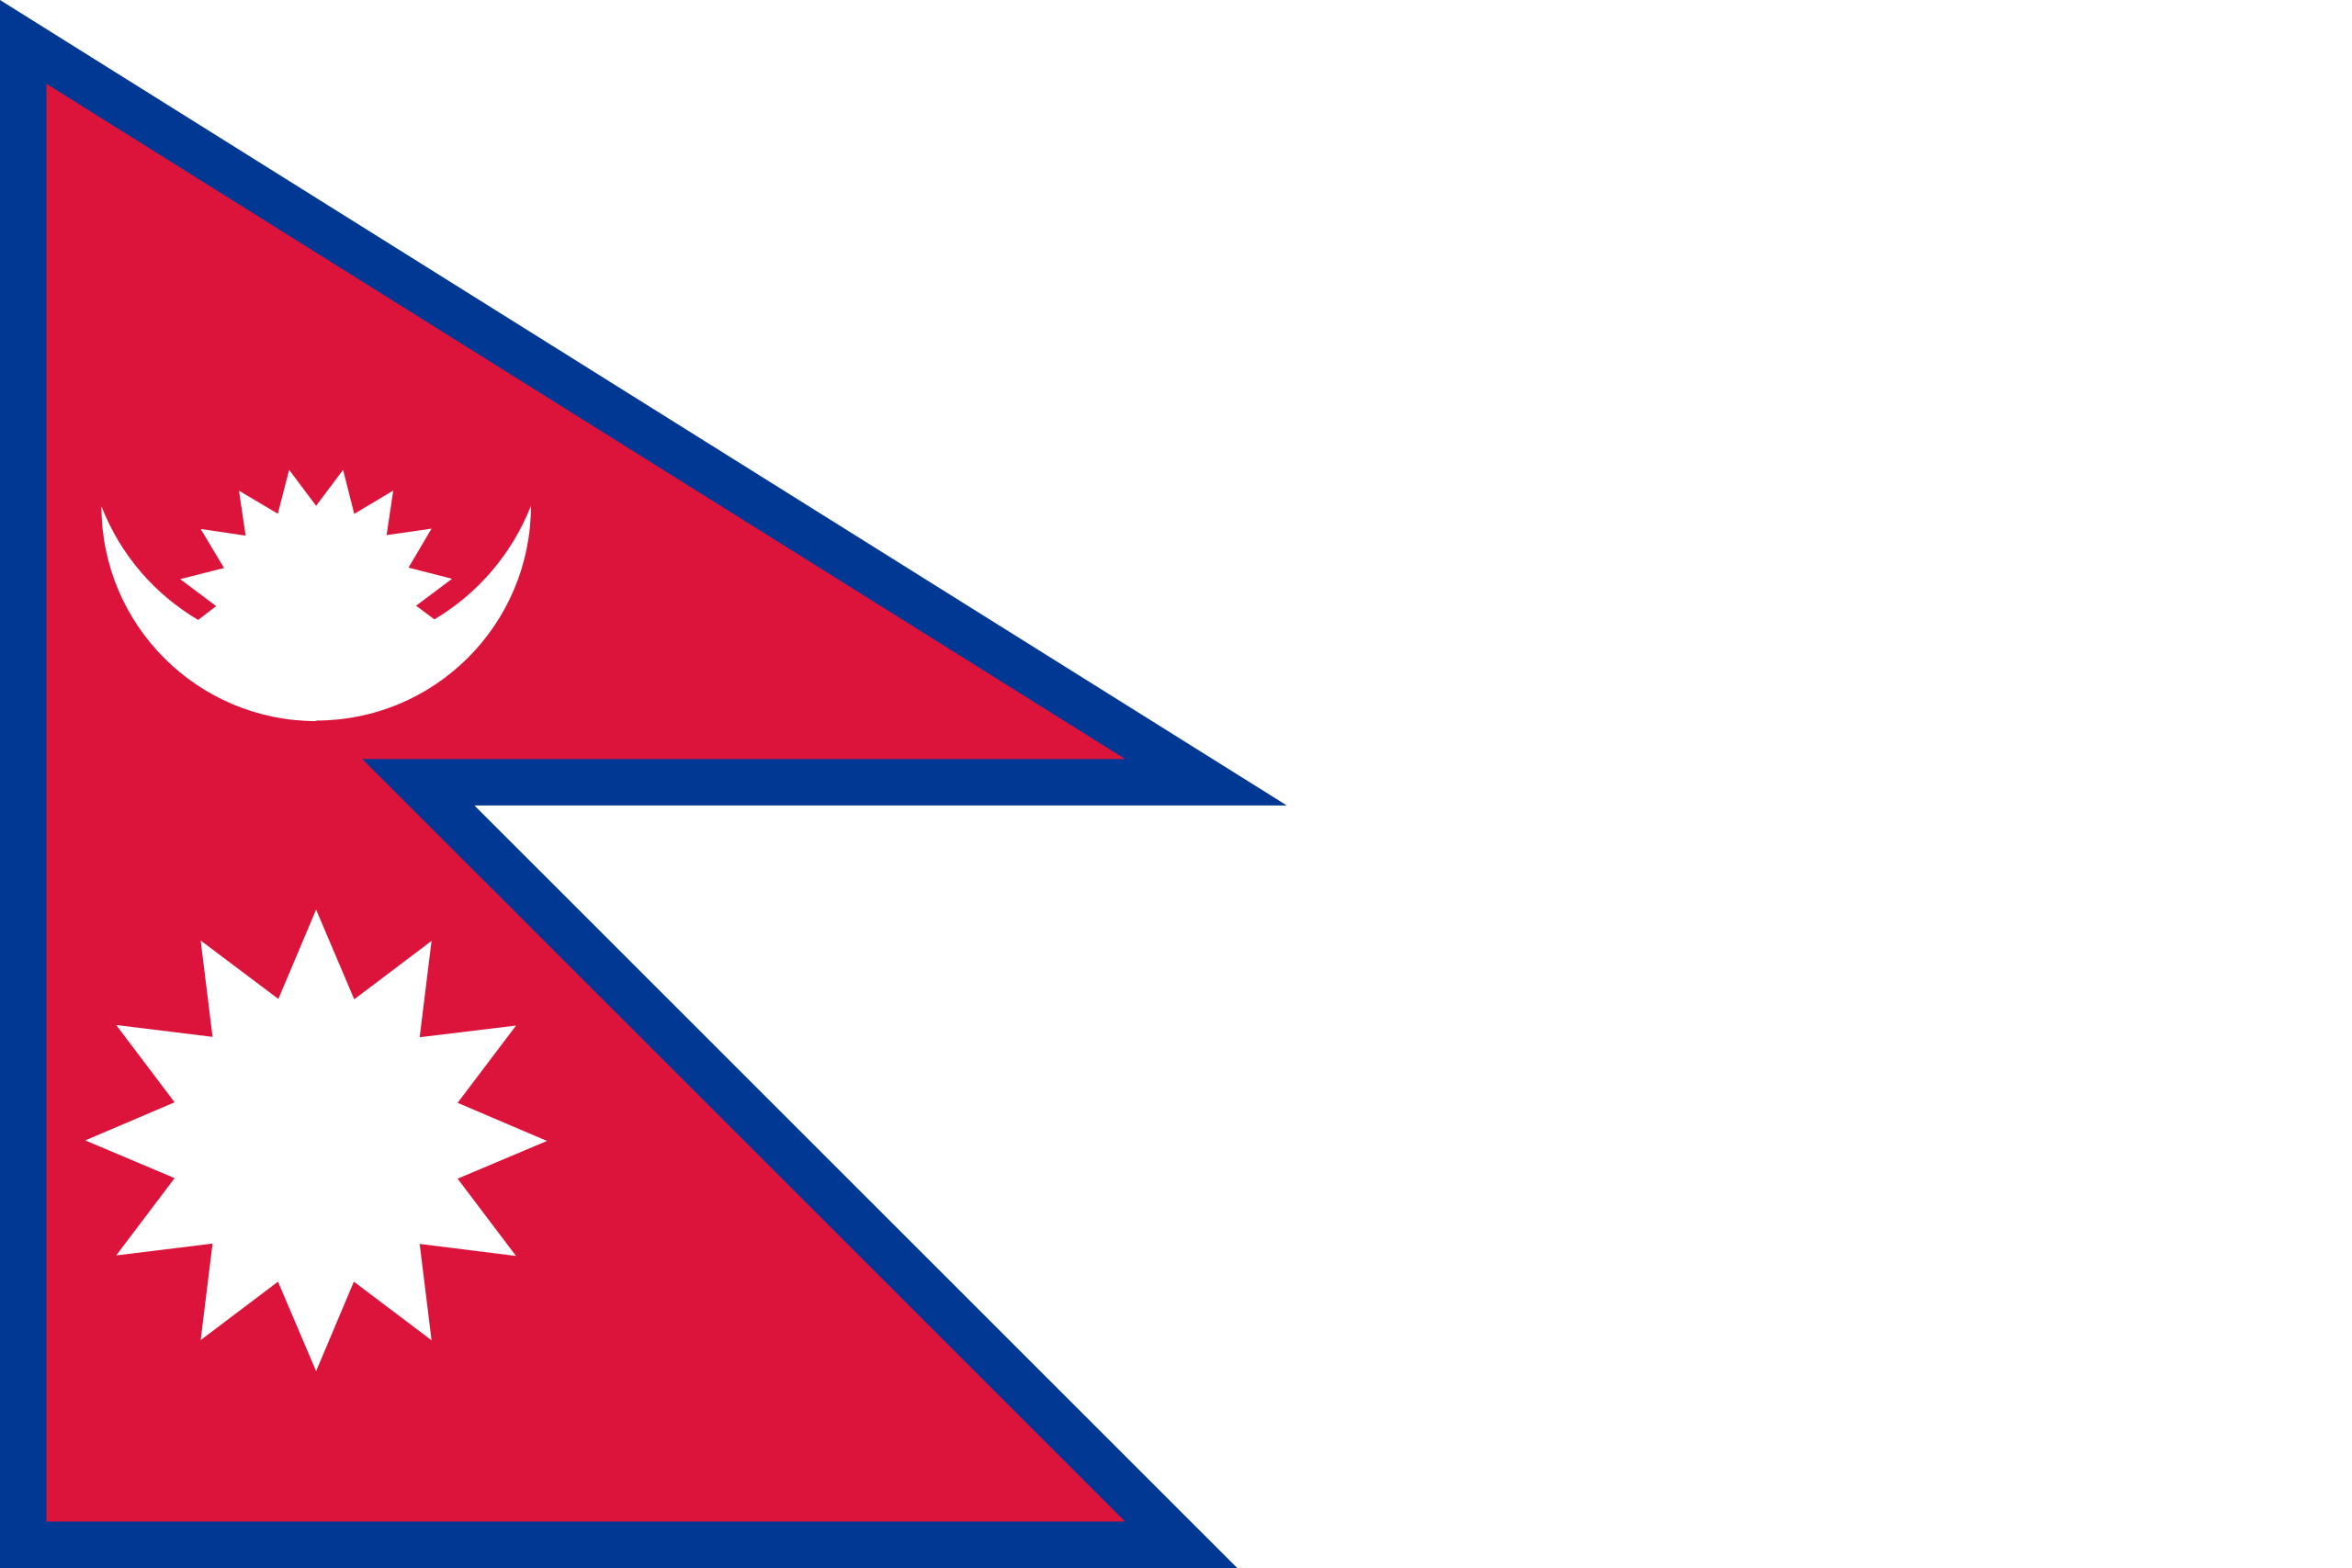 Cờ Nepal với hình dạng đặc trưng và ý nghĩa sâu sắc đang trở thành xu hướng thịnh hành trong năm nay. Hãy xem hình và tìm hiểu về tin tức và sự kiện đang liên quan đến cờ Nepal trên toàn thế giới.